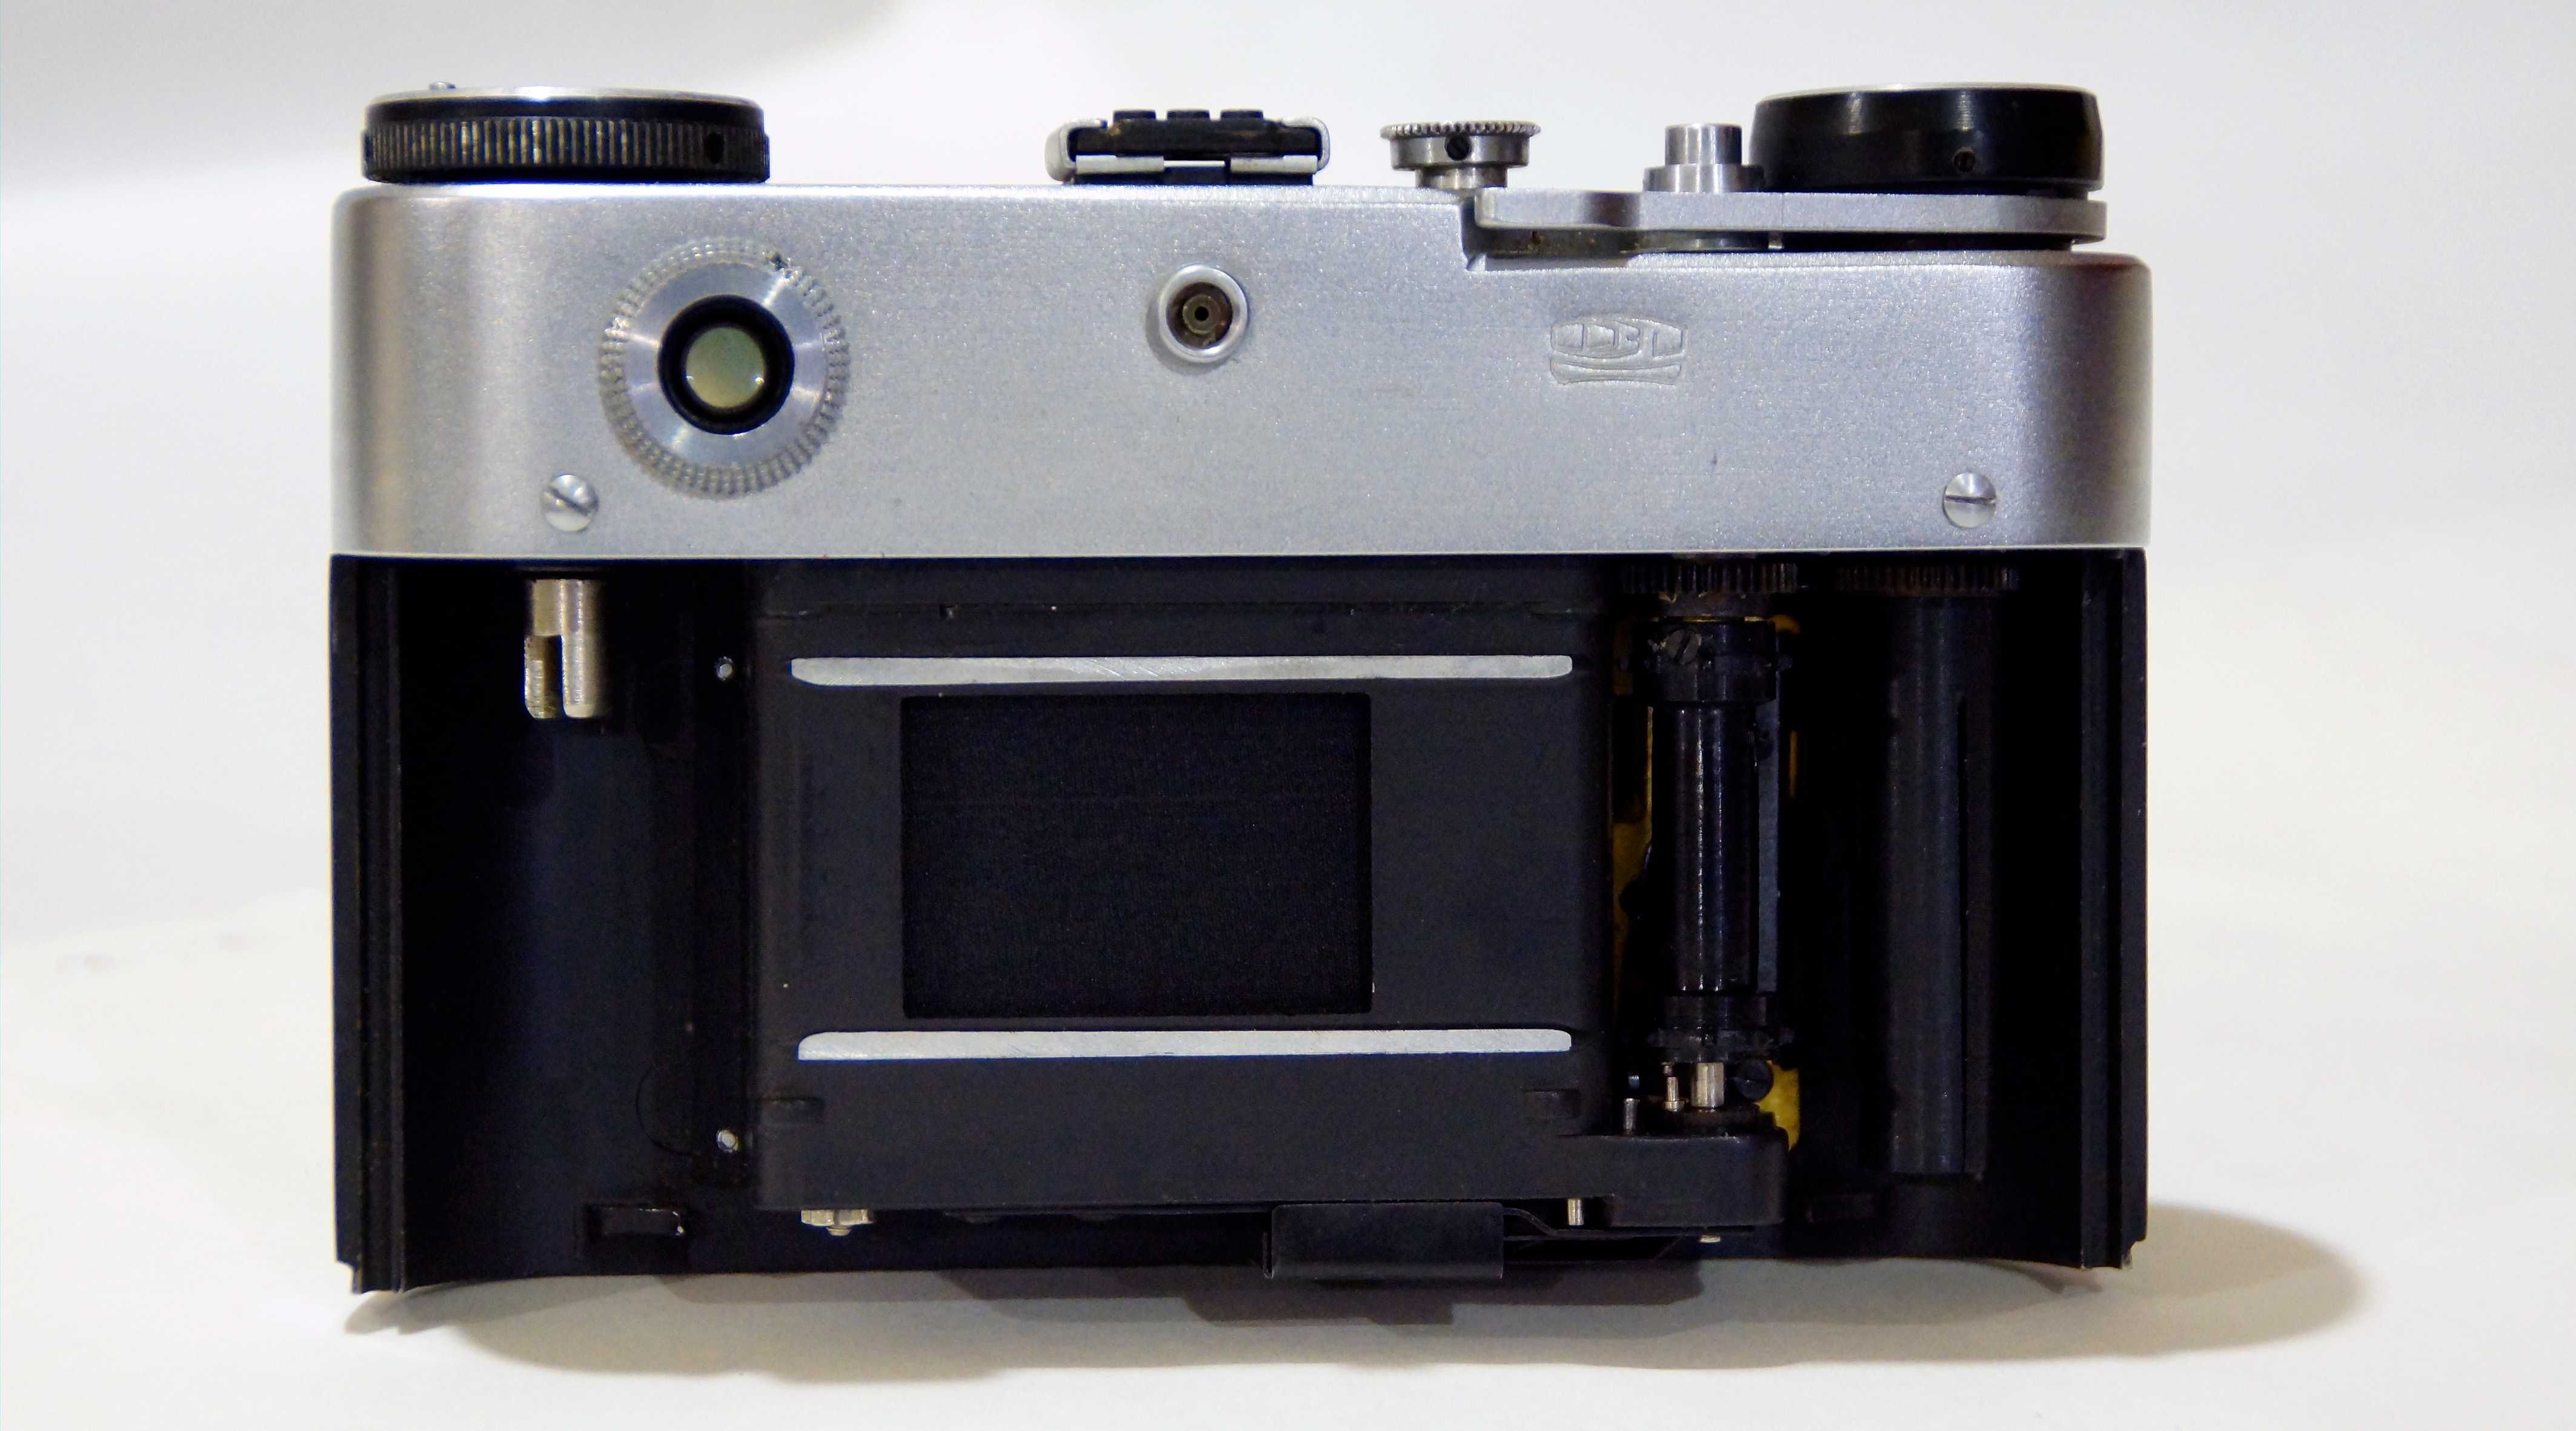 Фотоаппарат ФЕД 5   №165212 Год выпуска минимум 1975 (есть видео).